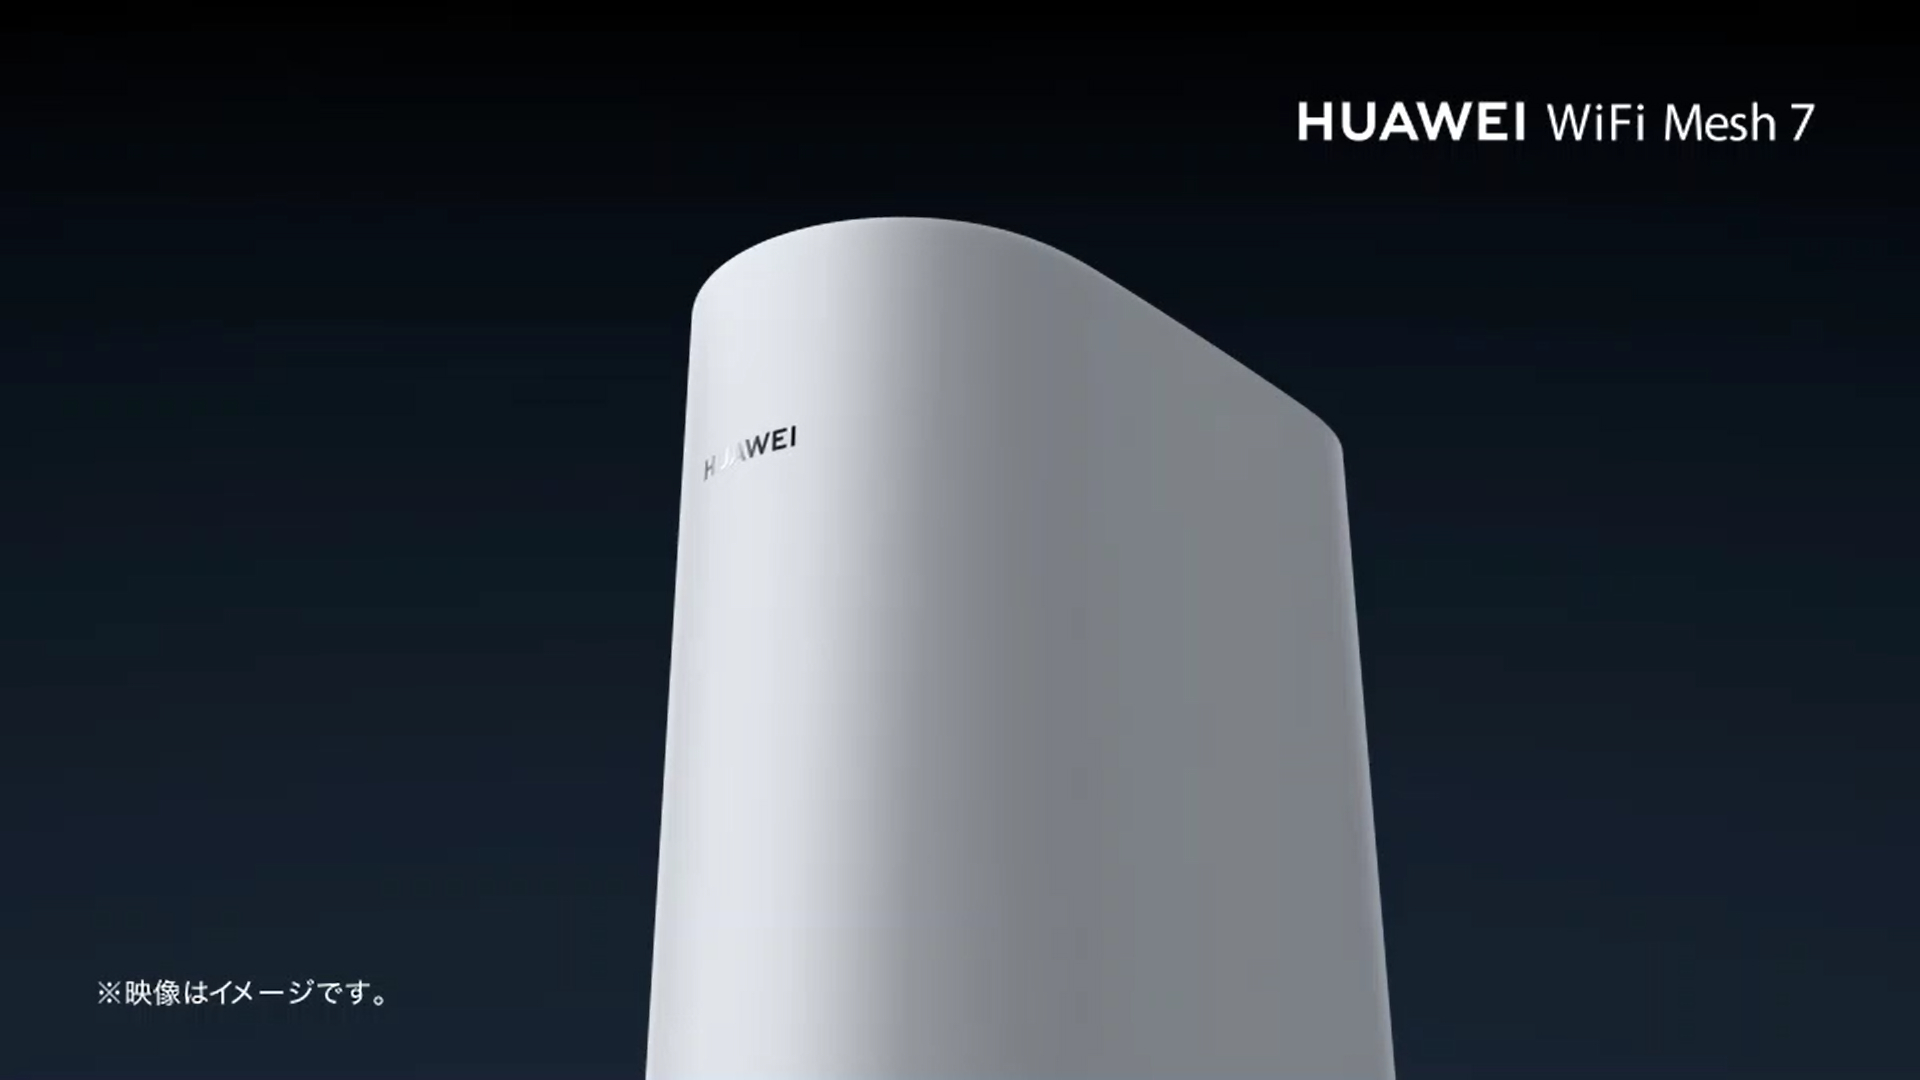 HUAWEI WiFi Mesh 7 Product Video